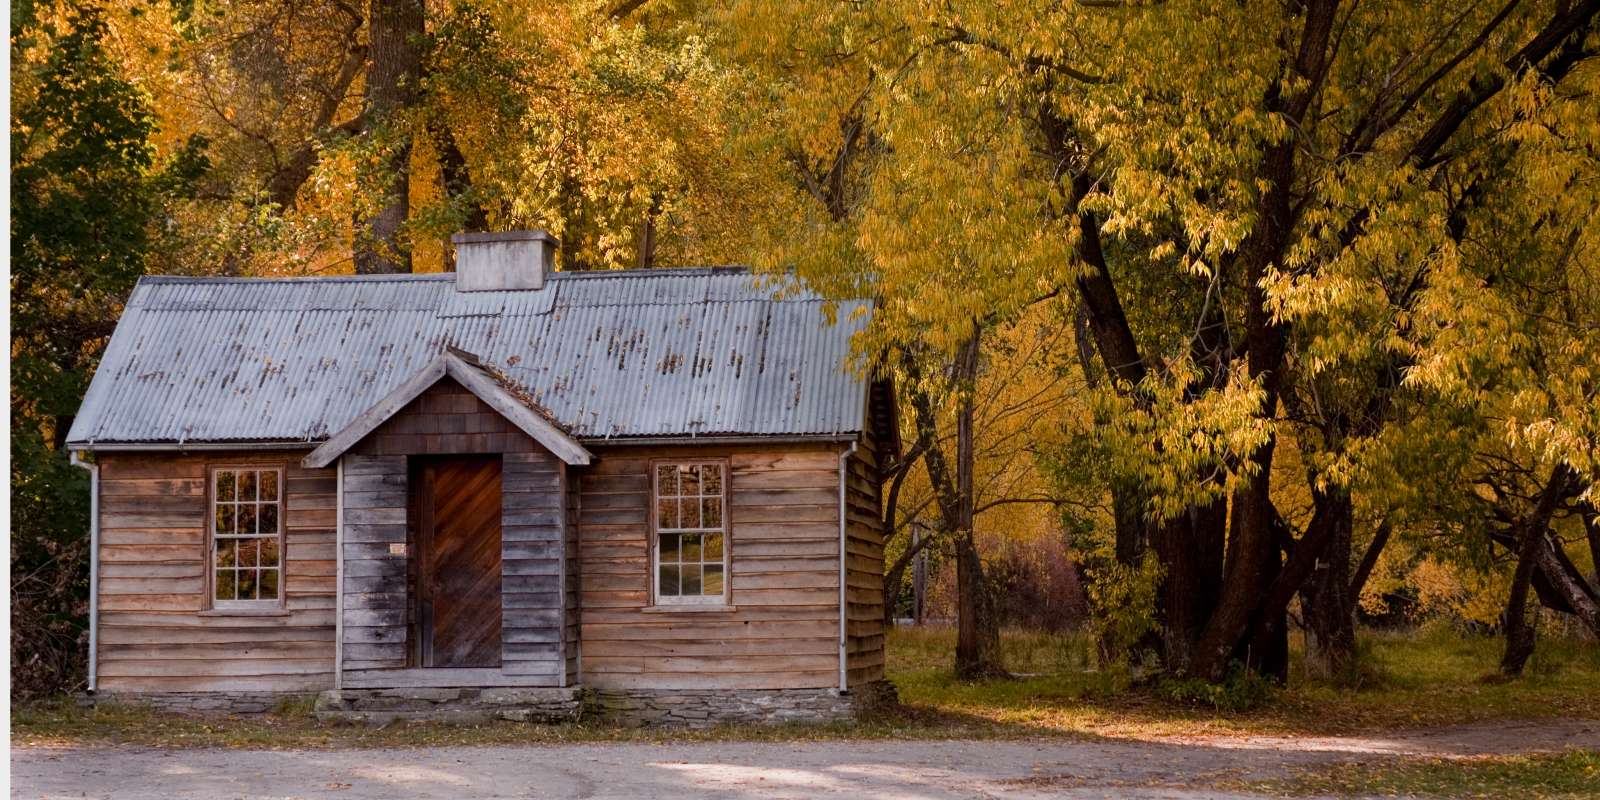 Arrowtown hut in Autumn